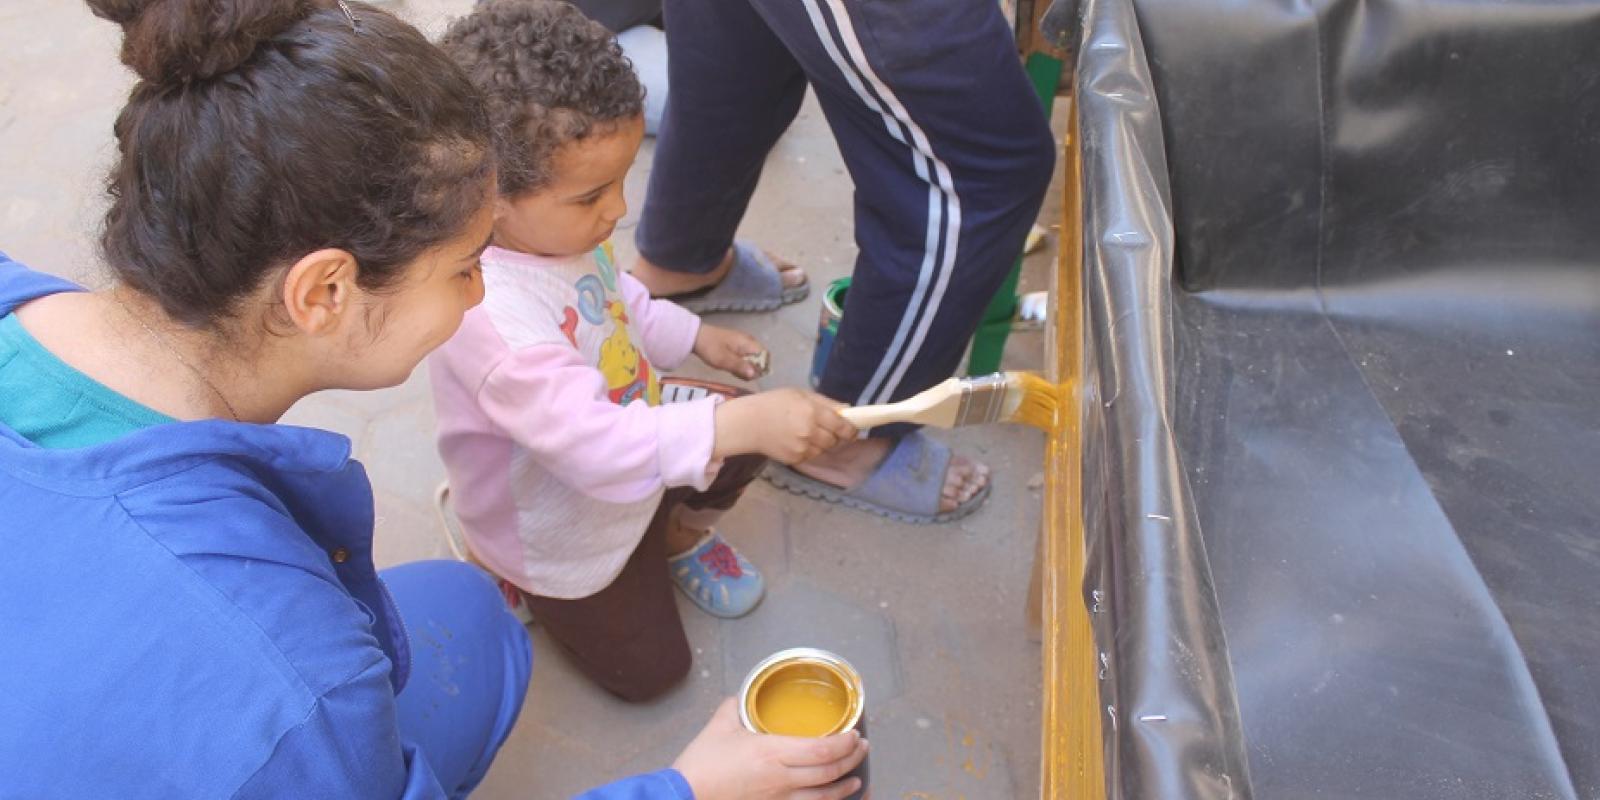 AUC Students Establish Sustainable Rooftop Community Garden in Informal Cairo Neighborhood